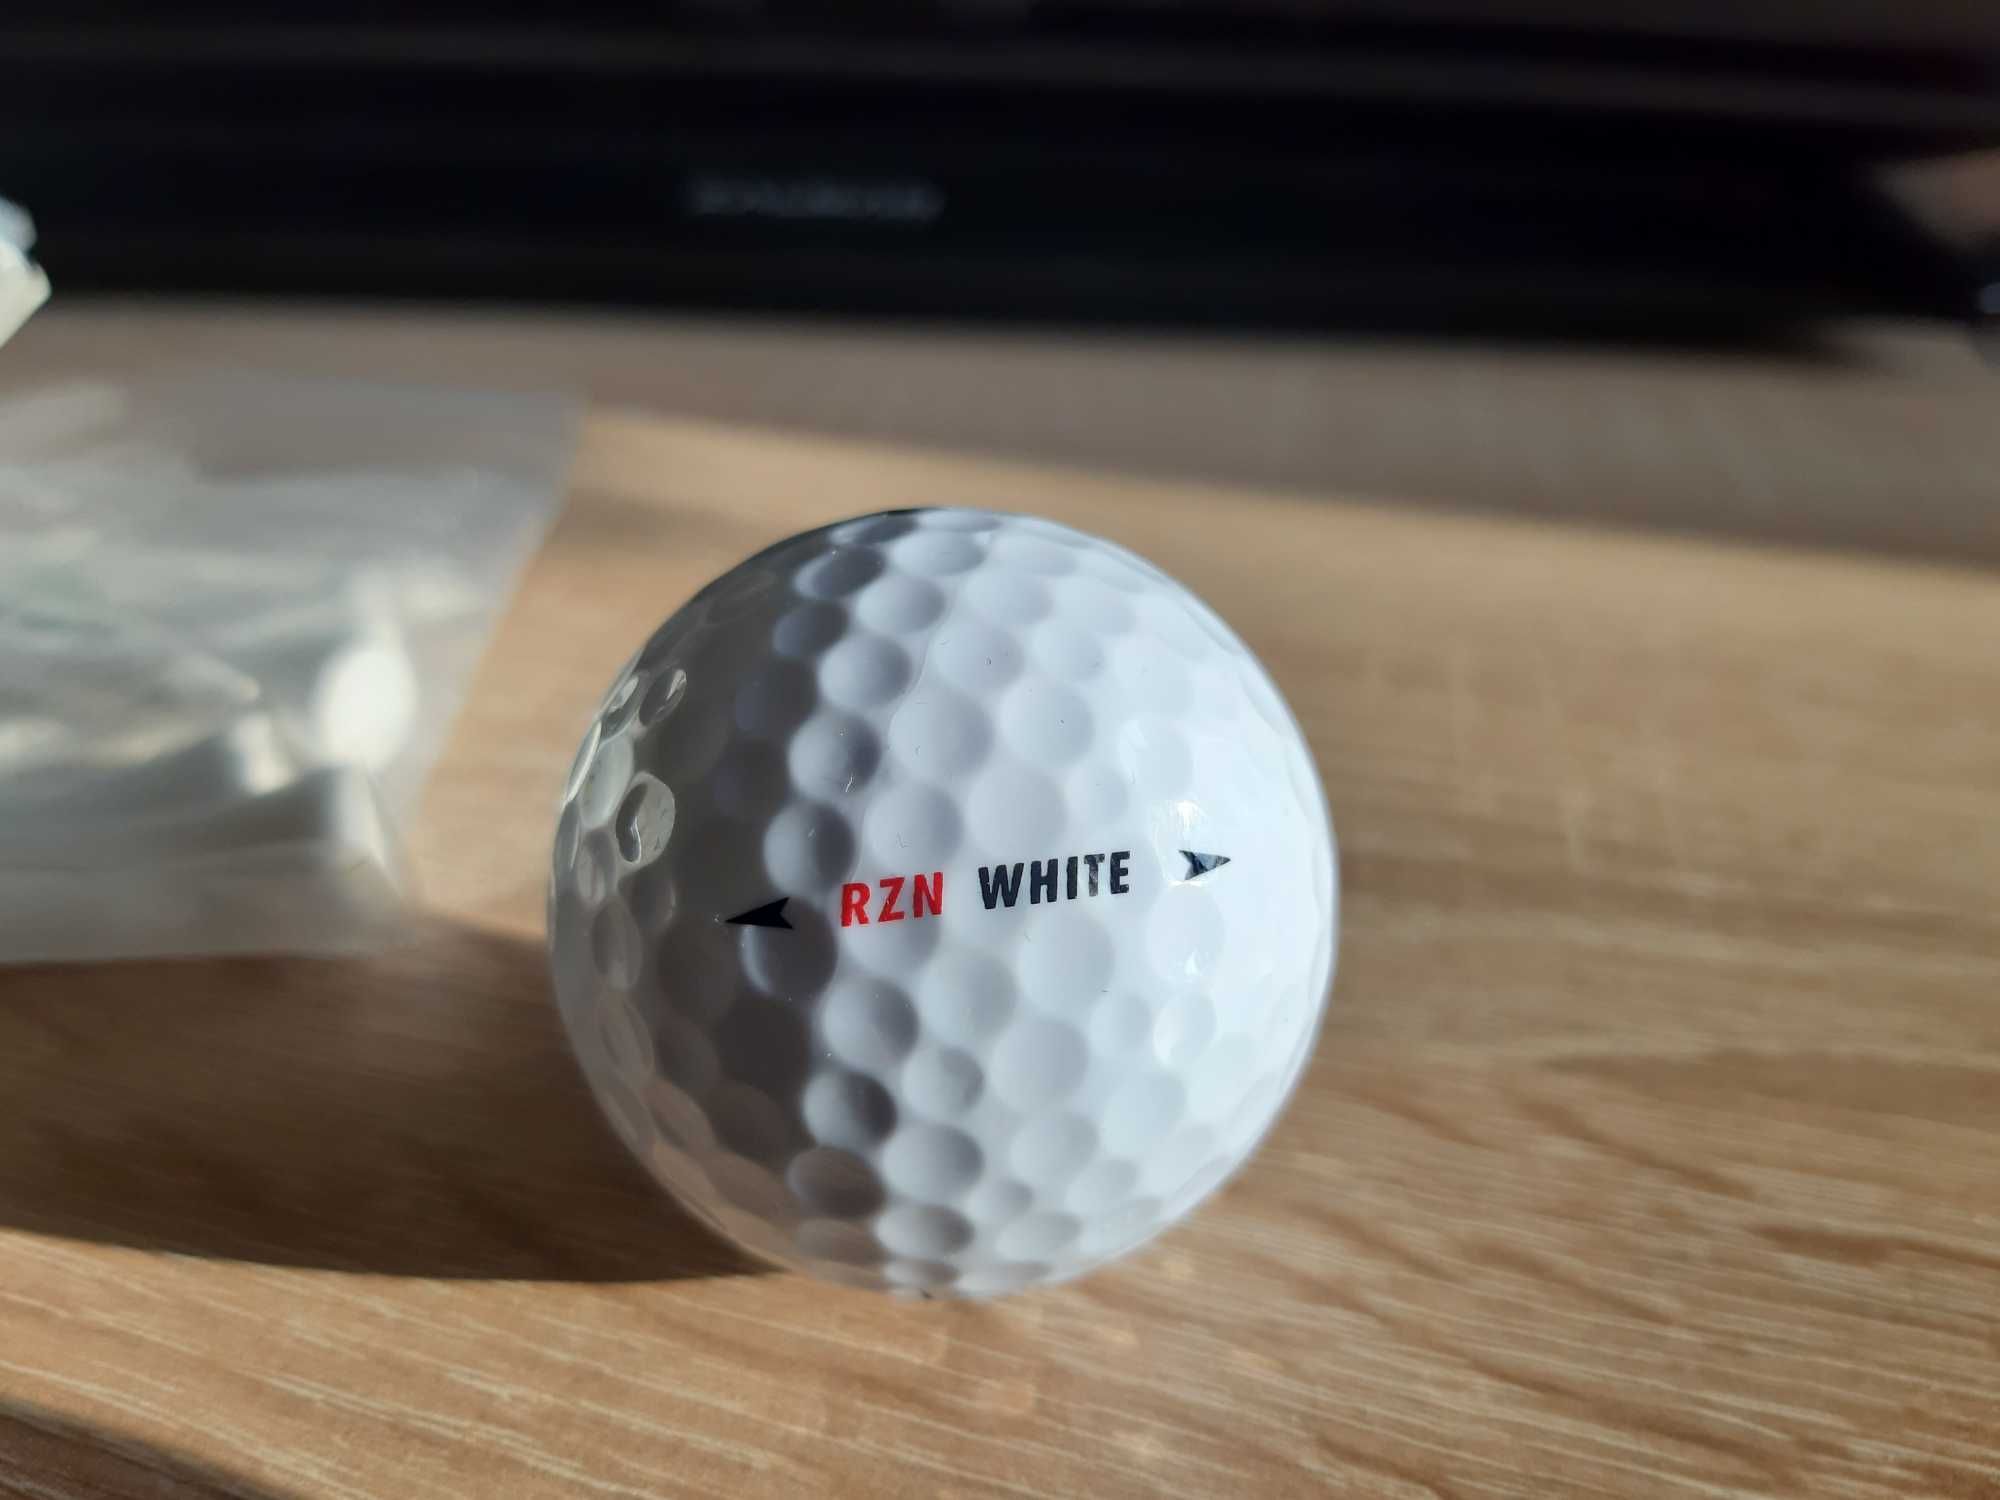 Piłeczki do golfa Nike RZN WHITE - Nowe szt. 3